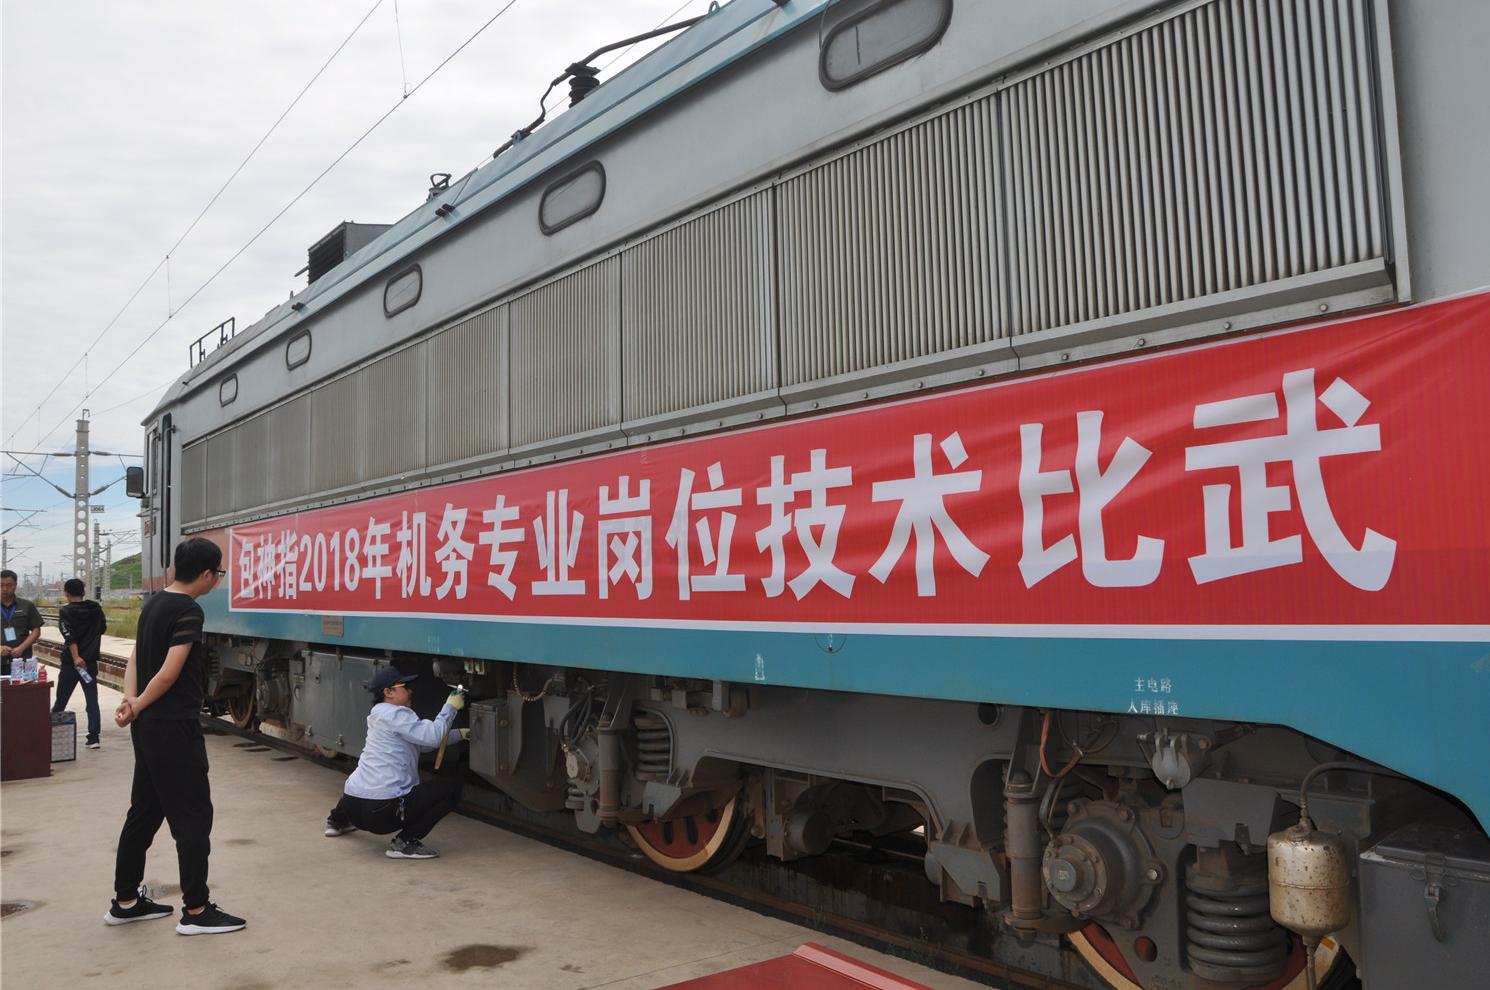 中国铁建十六局集团铁运公司包神铁路运营指挥部万吨重载列车安全运营一周年